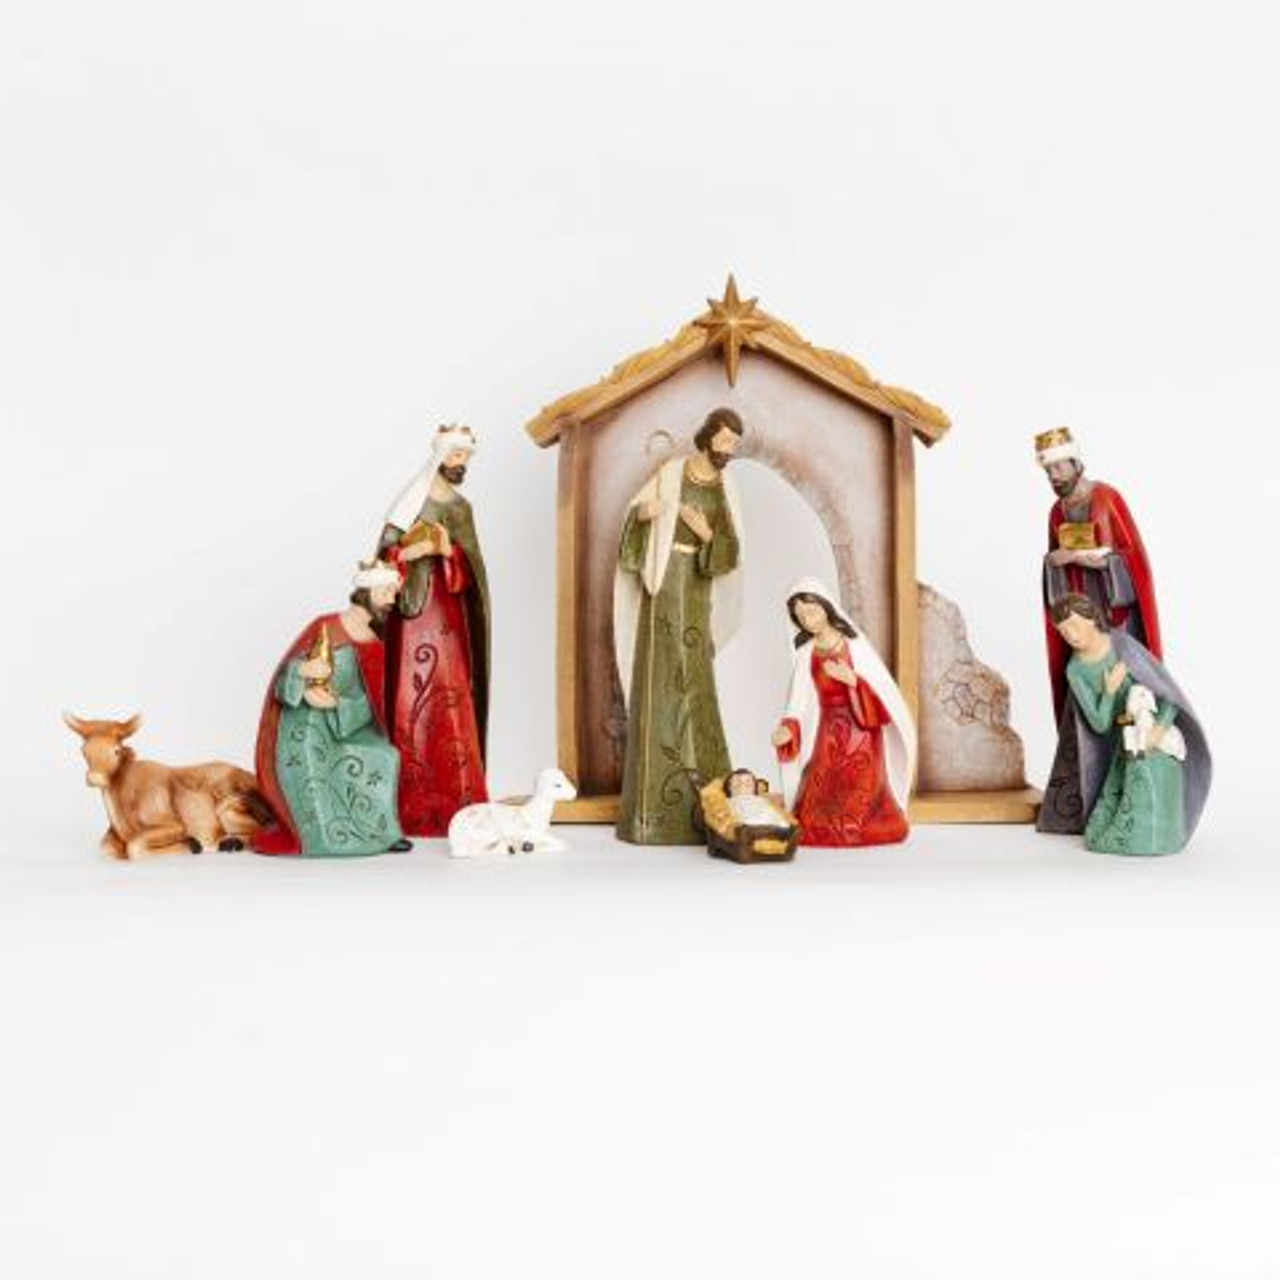 Decorative Vine Nativity (10 Piece Set)) While supplies last*